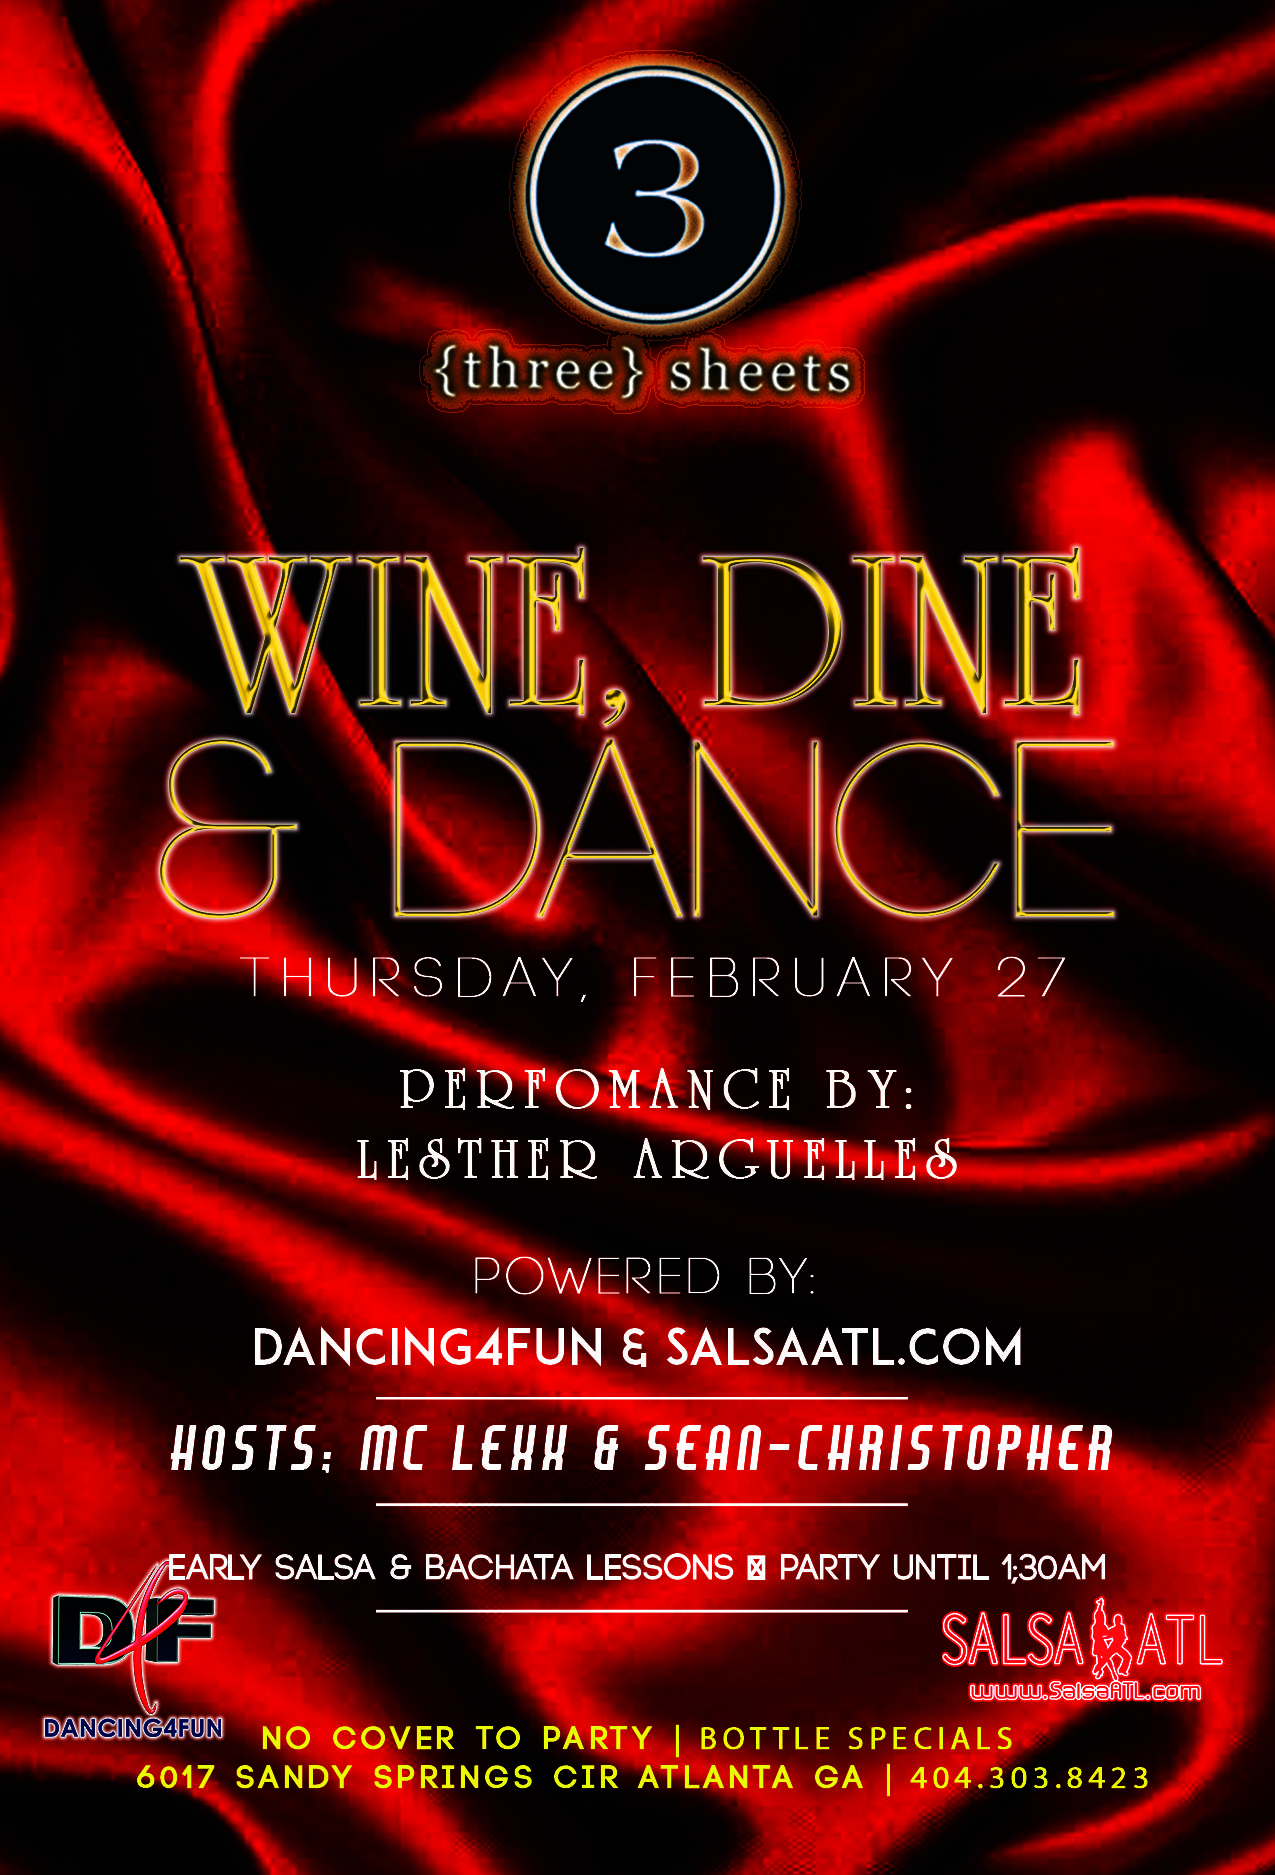 Wine, Dine, & Dance